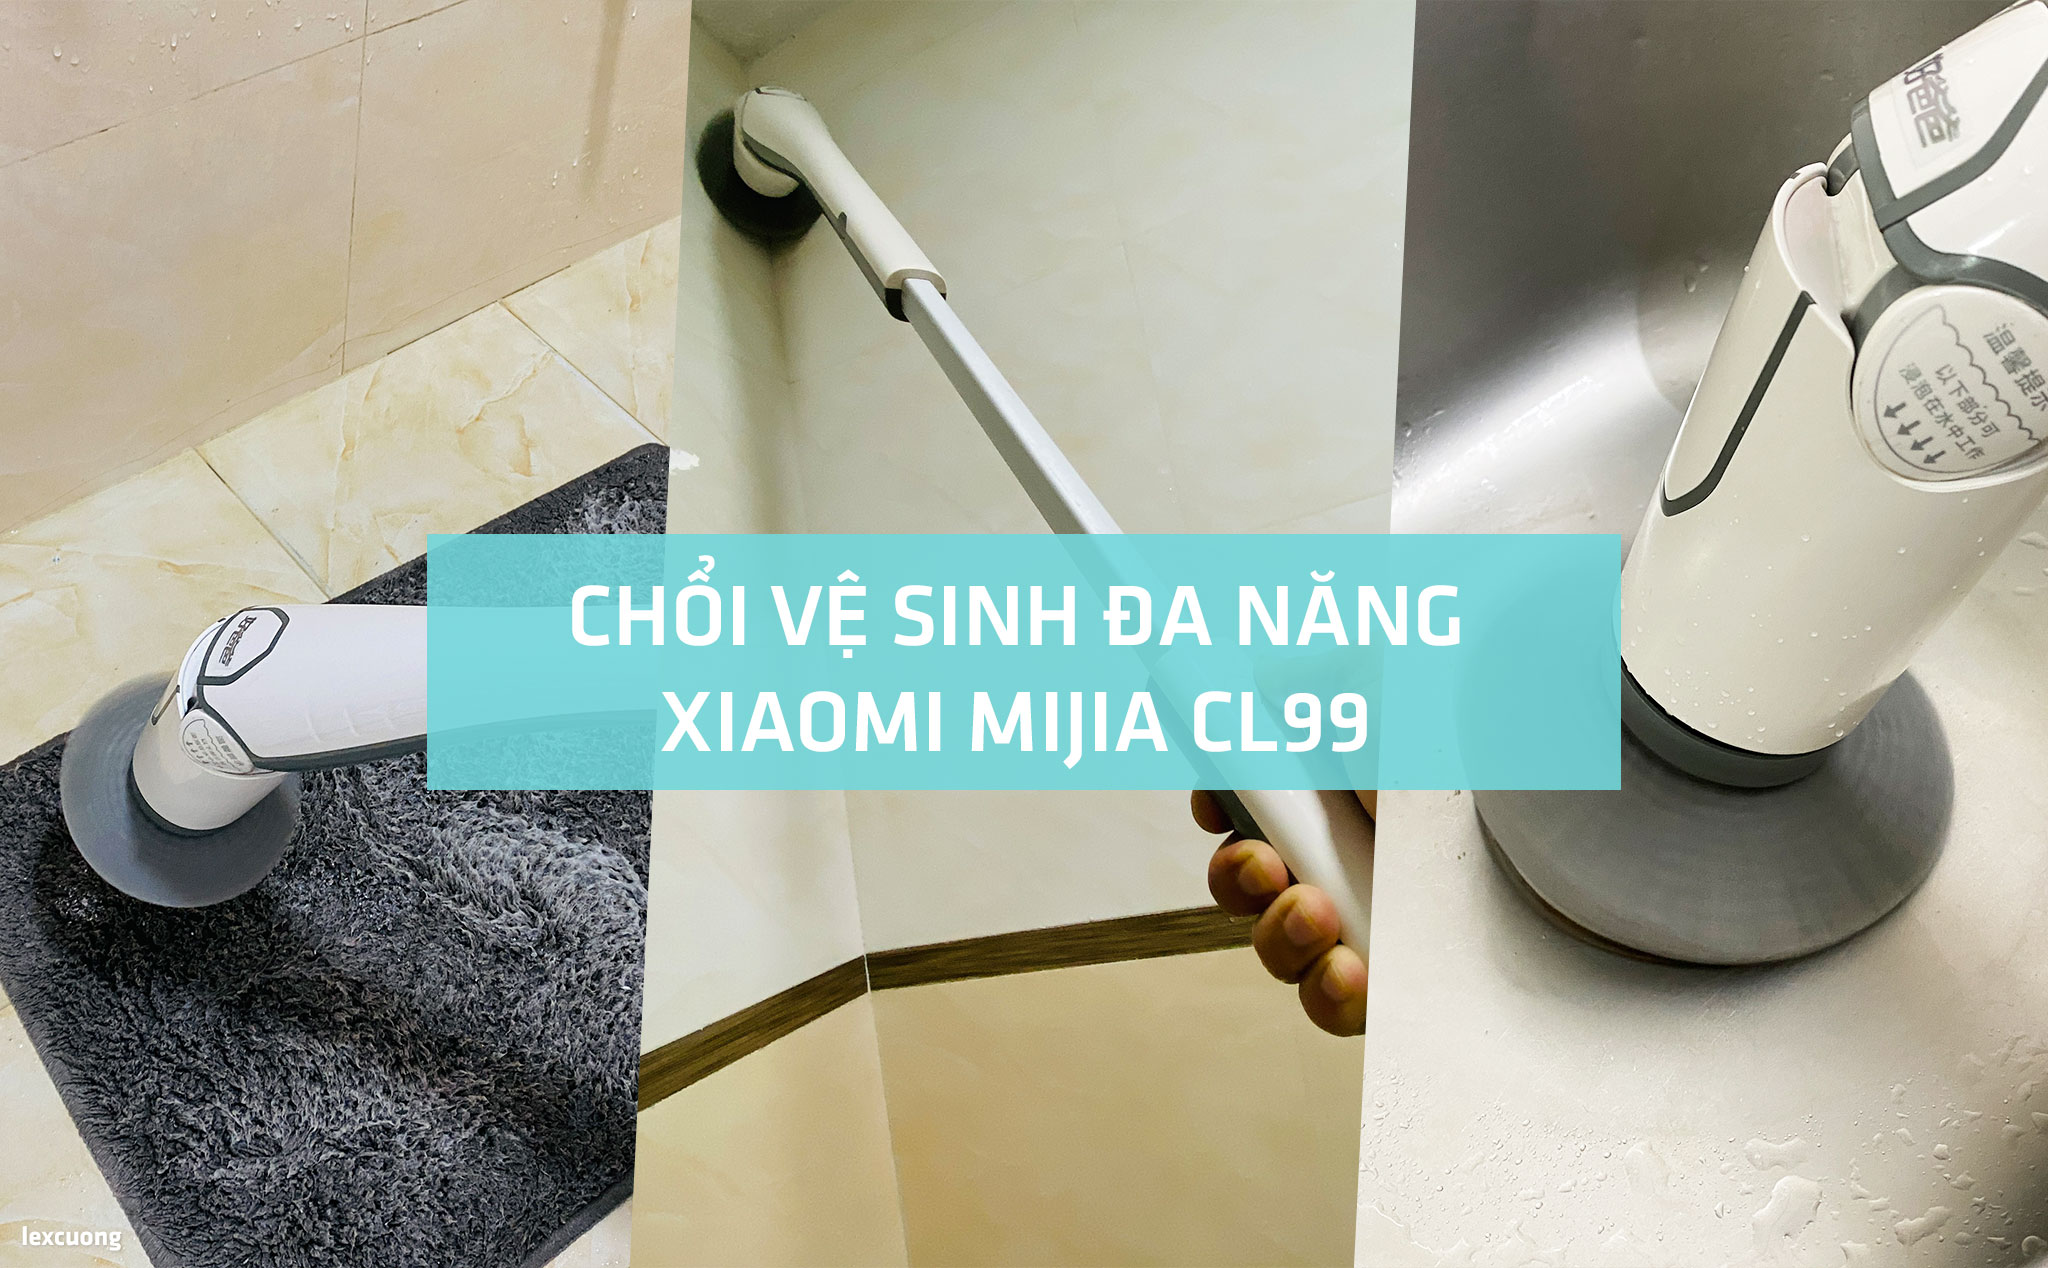 Chổi vệ sinh đa năng Xiaomi Mijia CL99: Dọn dẹp nhà bếp, nhà tắm dễ dàng và đơn giản hơn